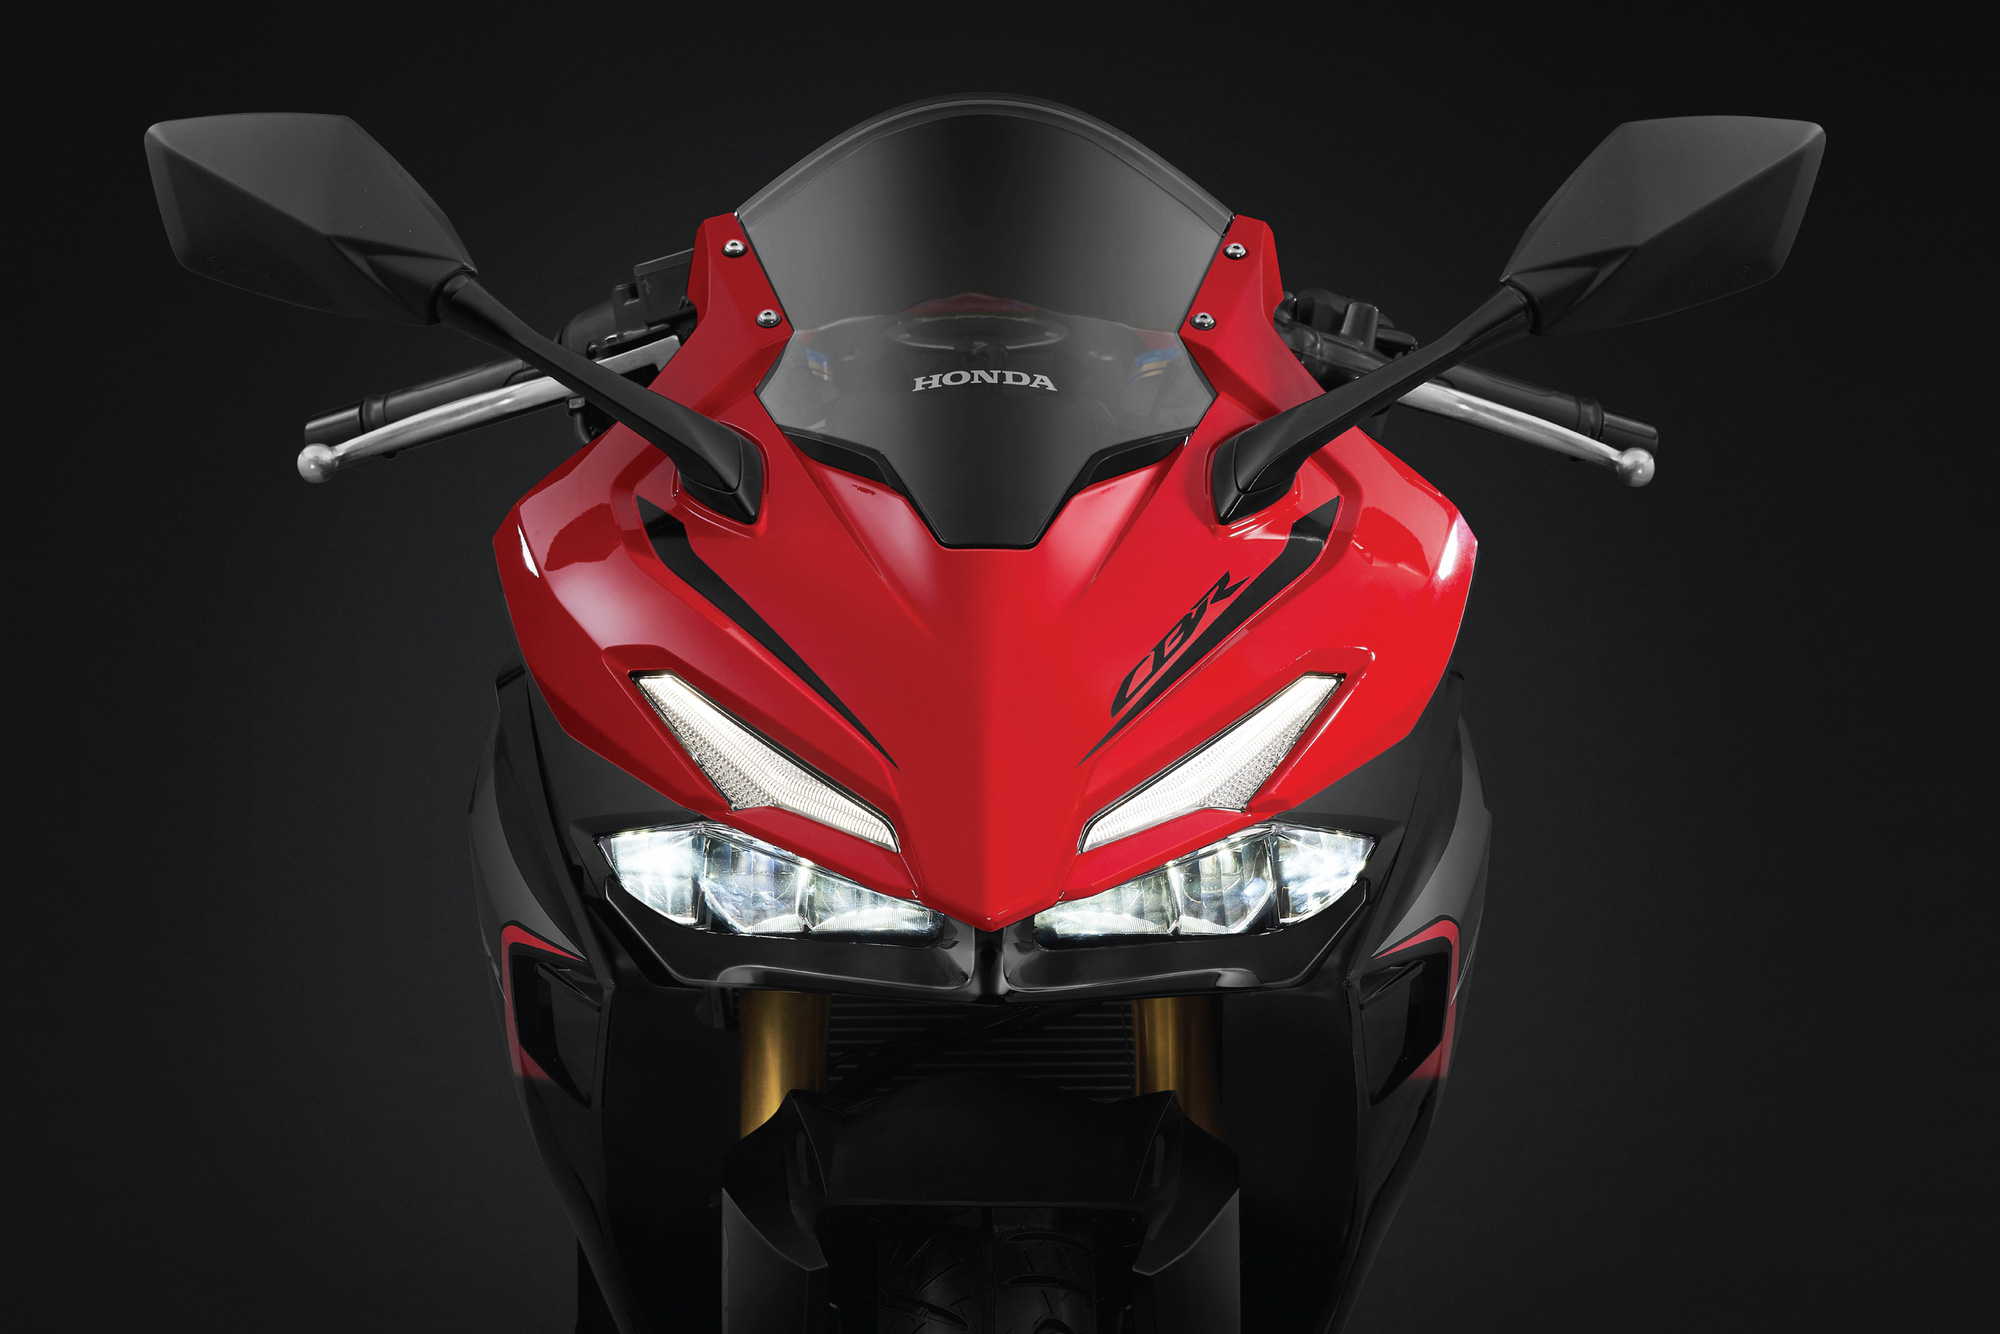 Đánh giá xe Honda CBR150R 2021 Đối thủ xứng tầm của Yamaha R15